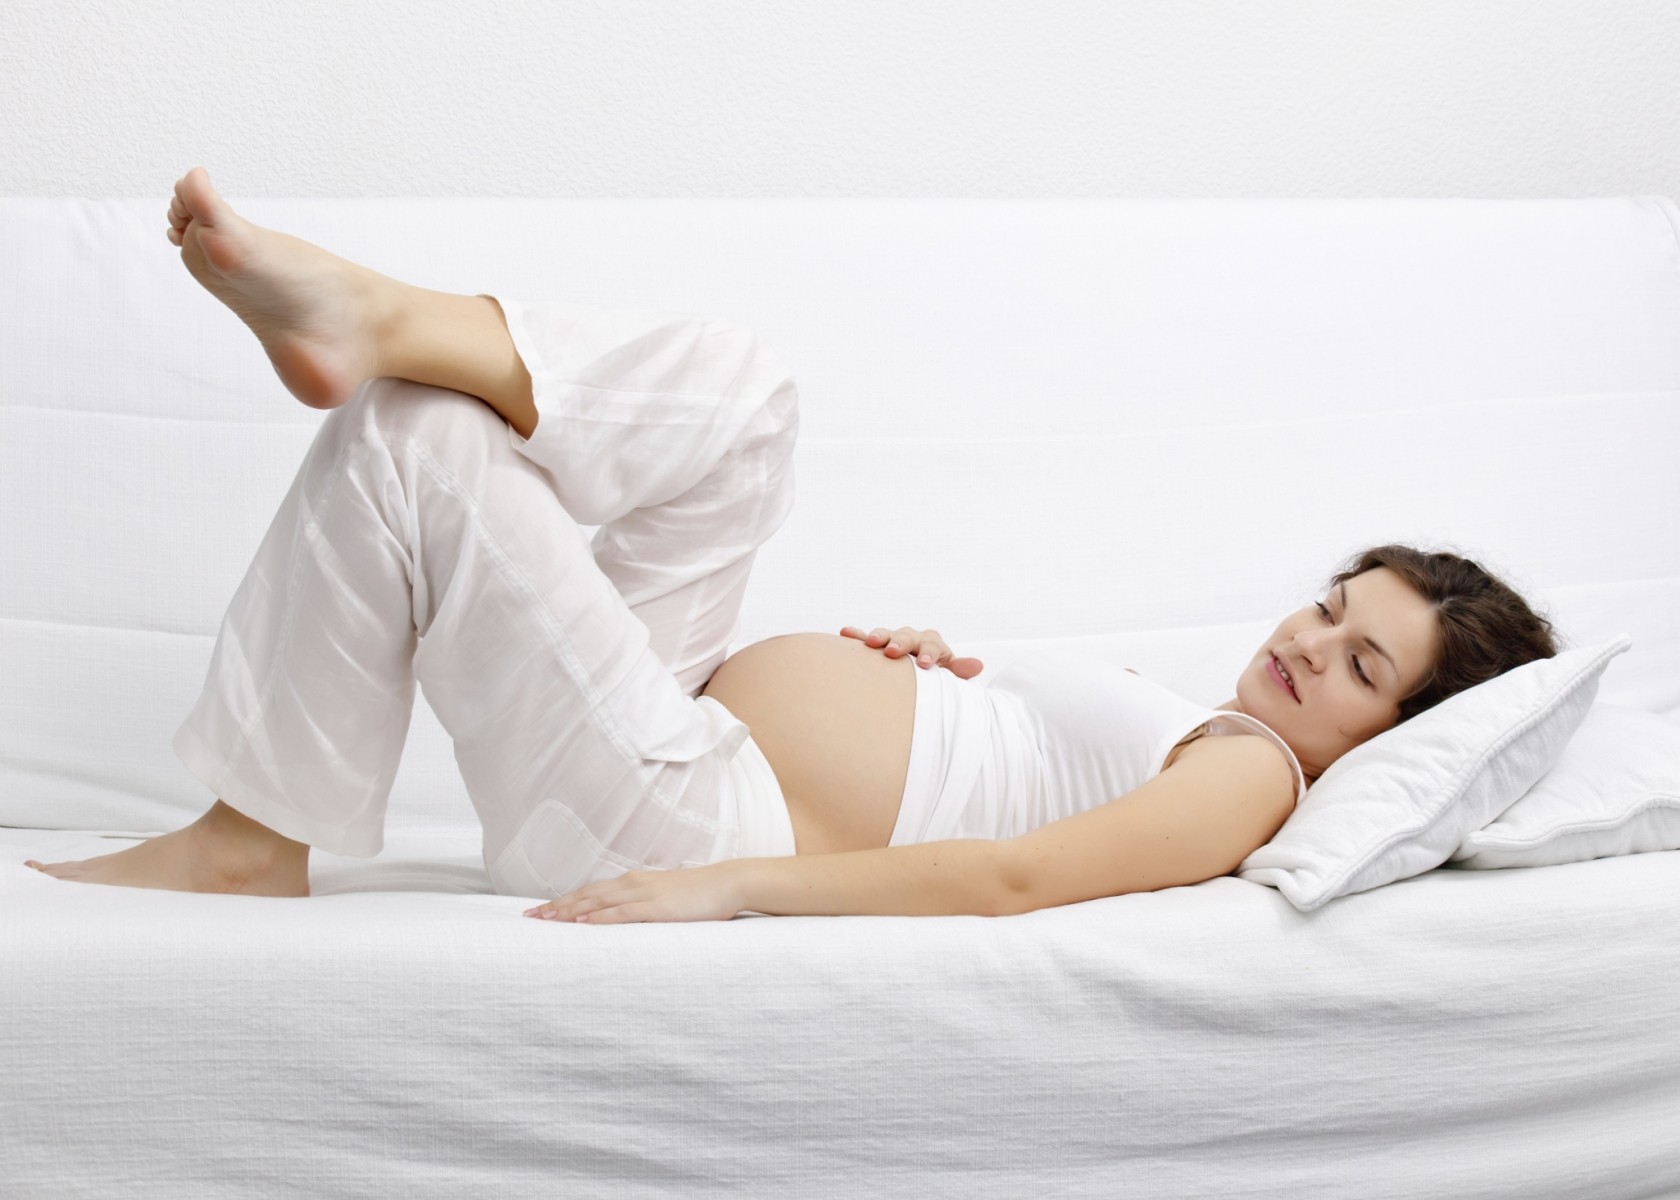 ¿Cuáles son las mejores clínicas de reproducción asistida en Zaragoza?